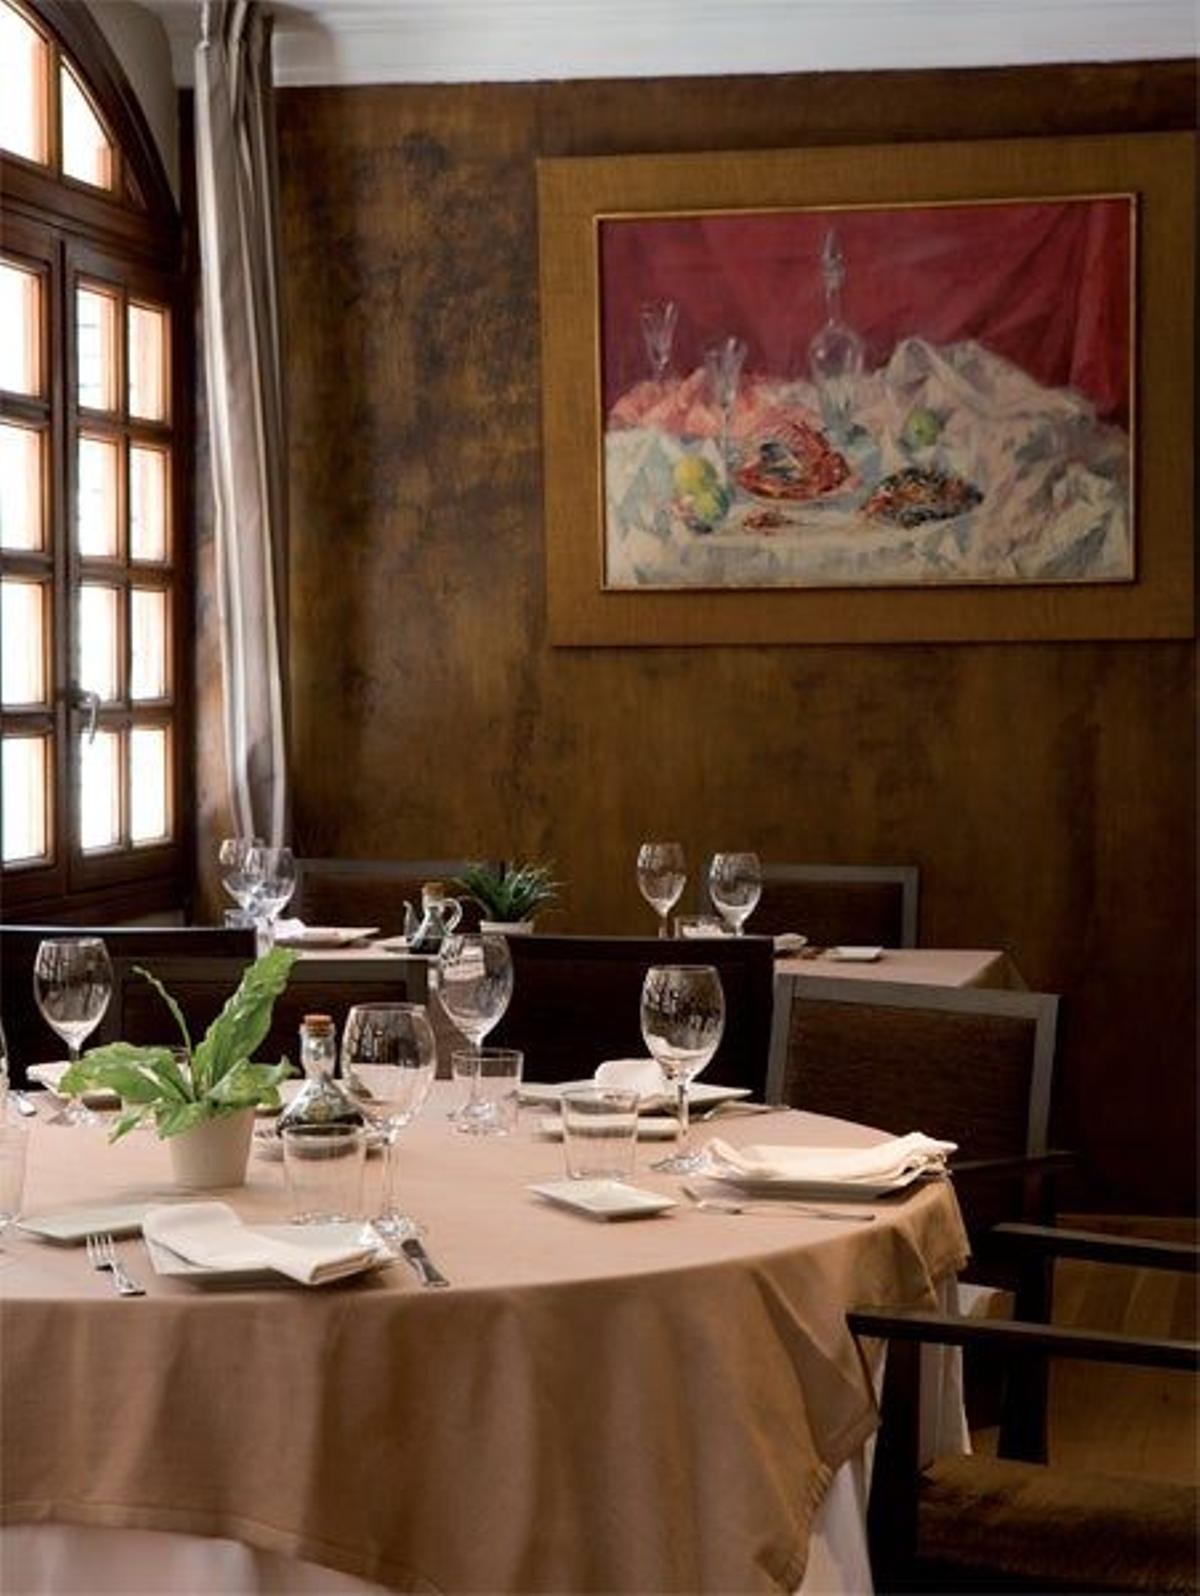 Salón del restaurante Los Arcosm enb Cangas de Onís.